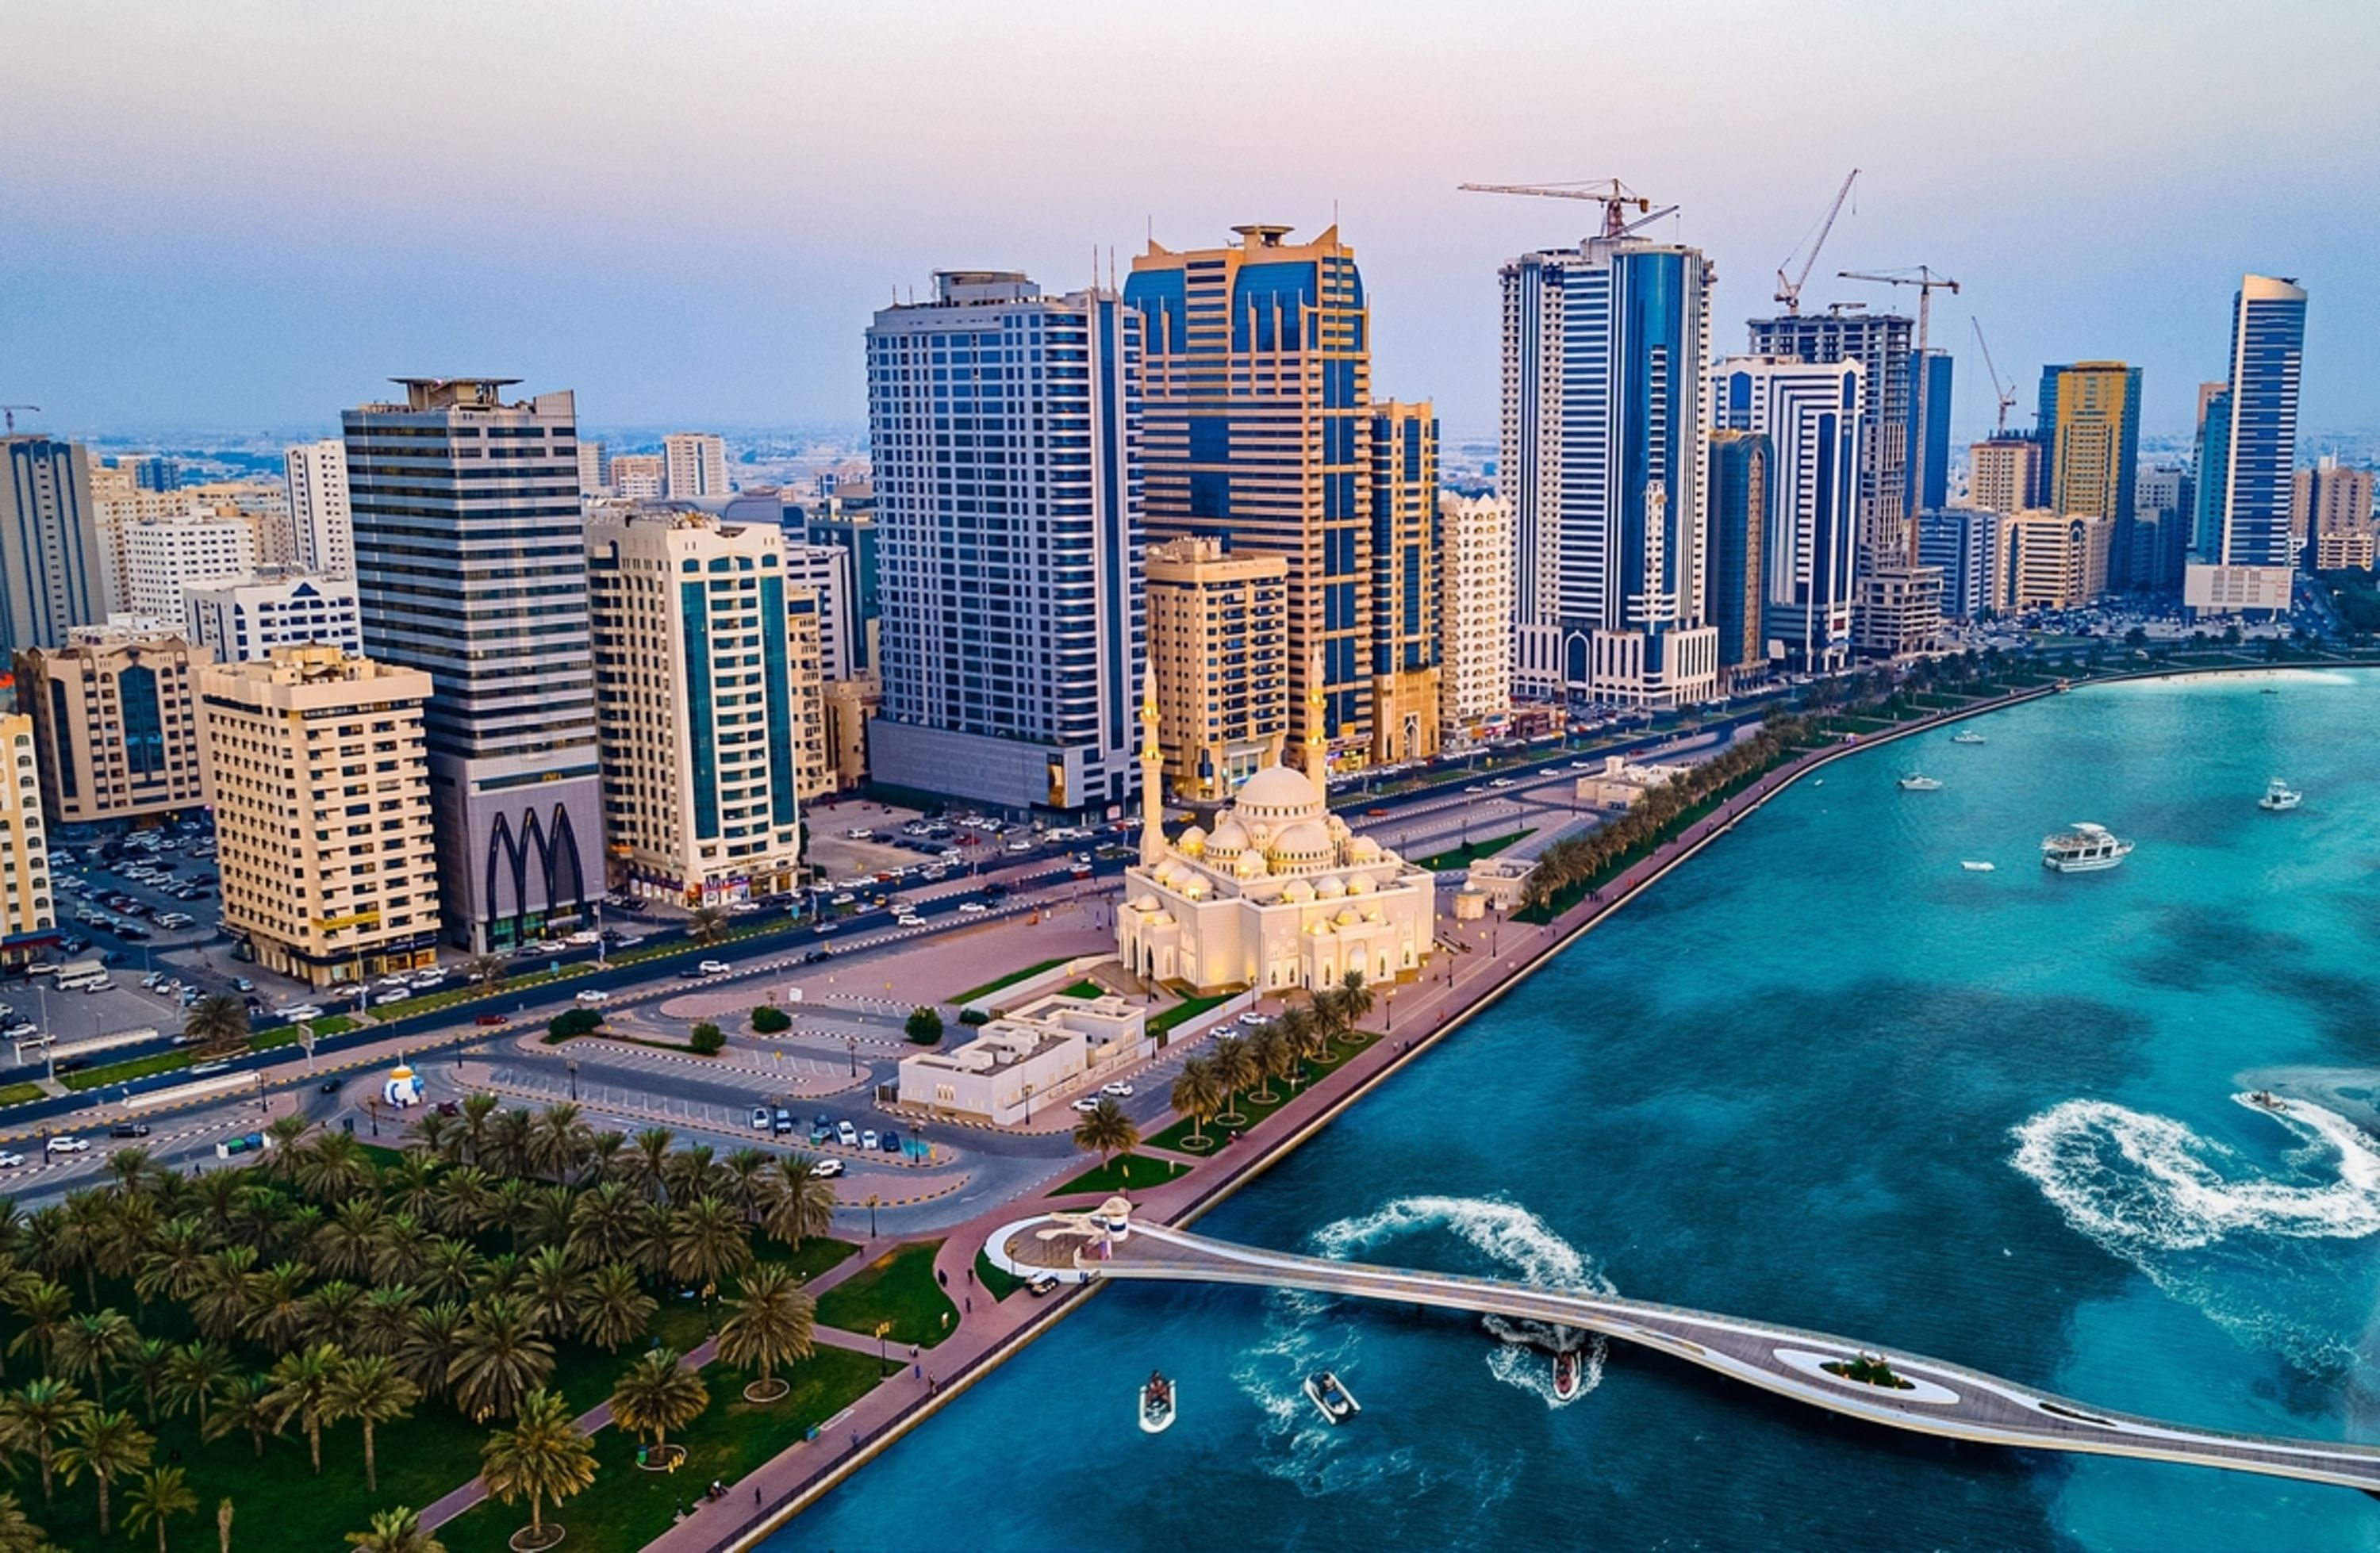 تعتبر الشارقة من أهم الوجهات السياحية في الإمارات لما تملكه من أماكن سياحية ومعالم بارزة تستقطب السياح من داخل وخارج الإمارات.